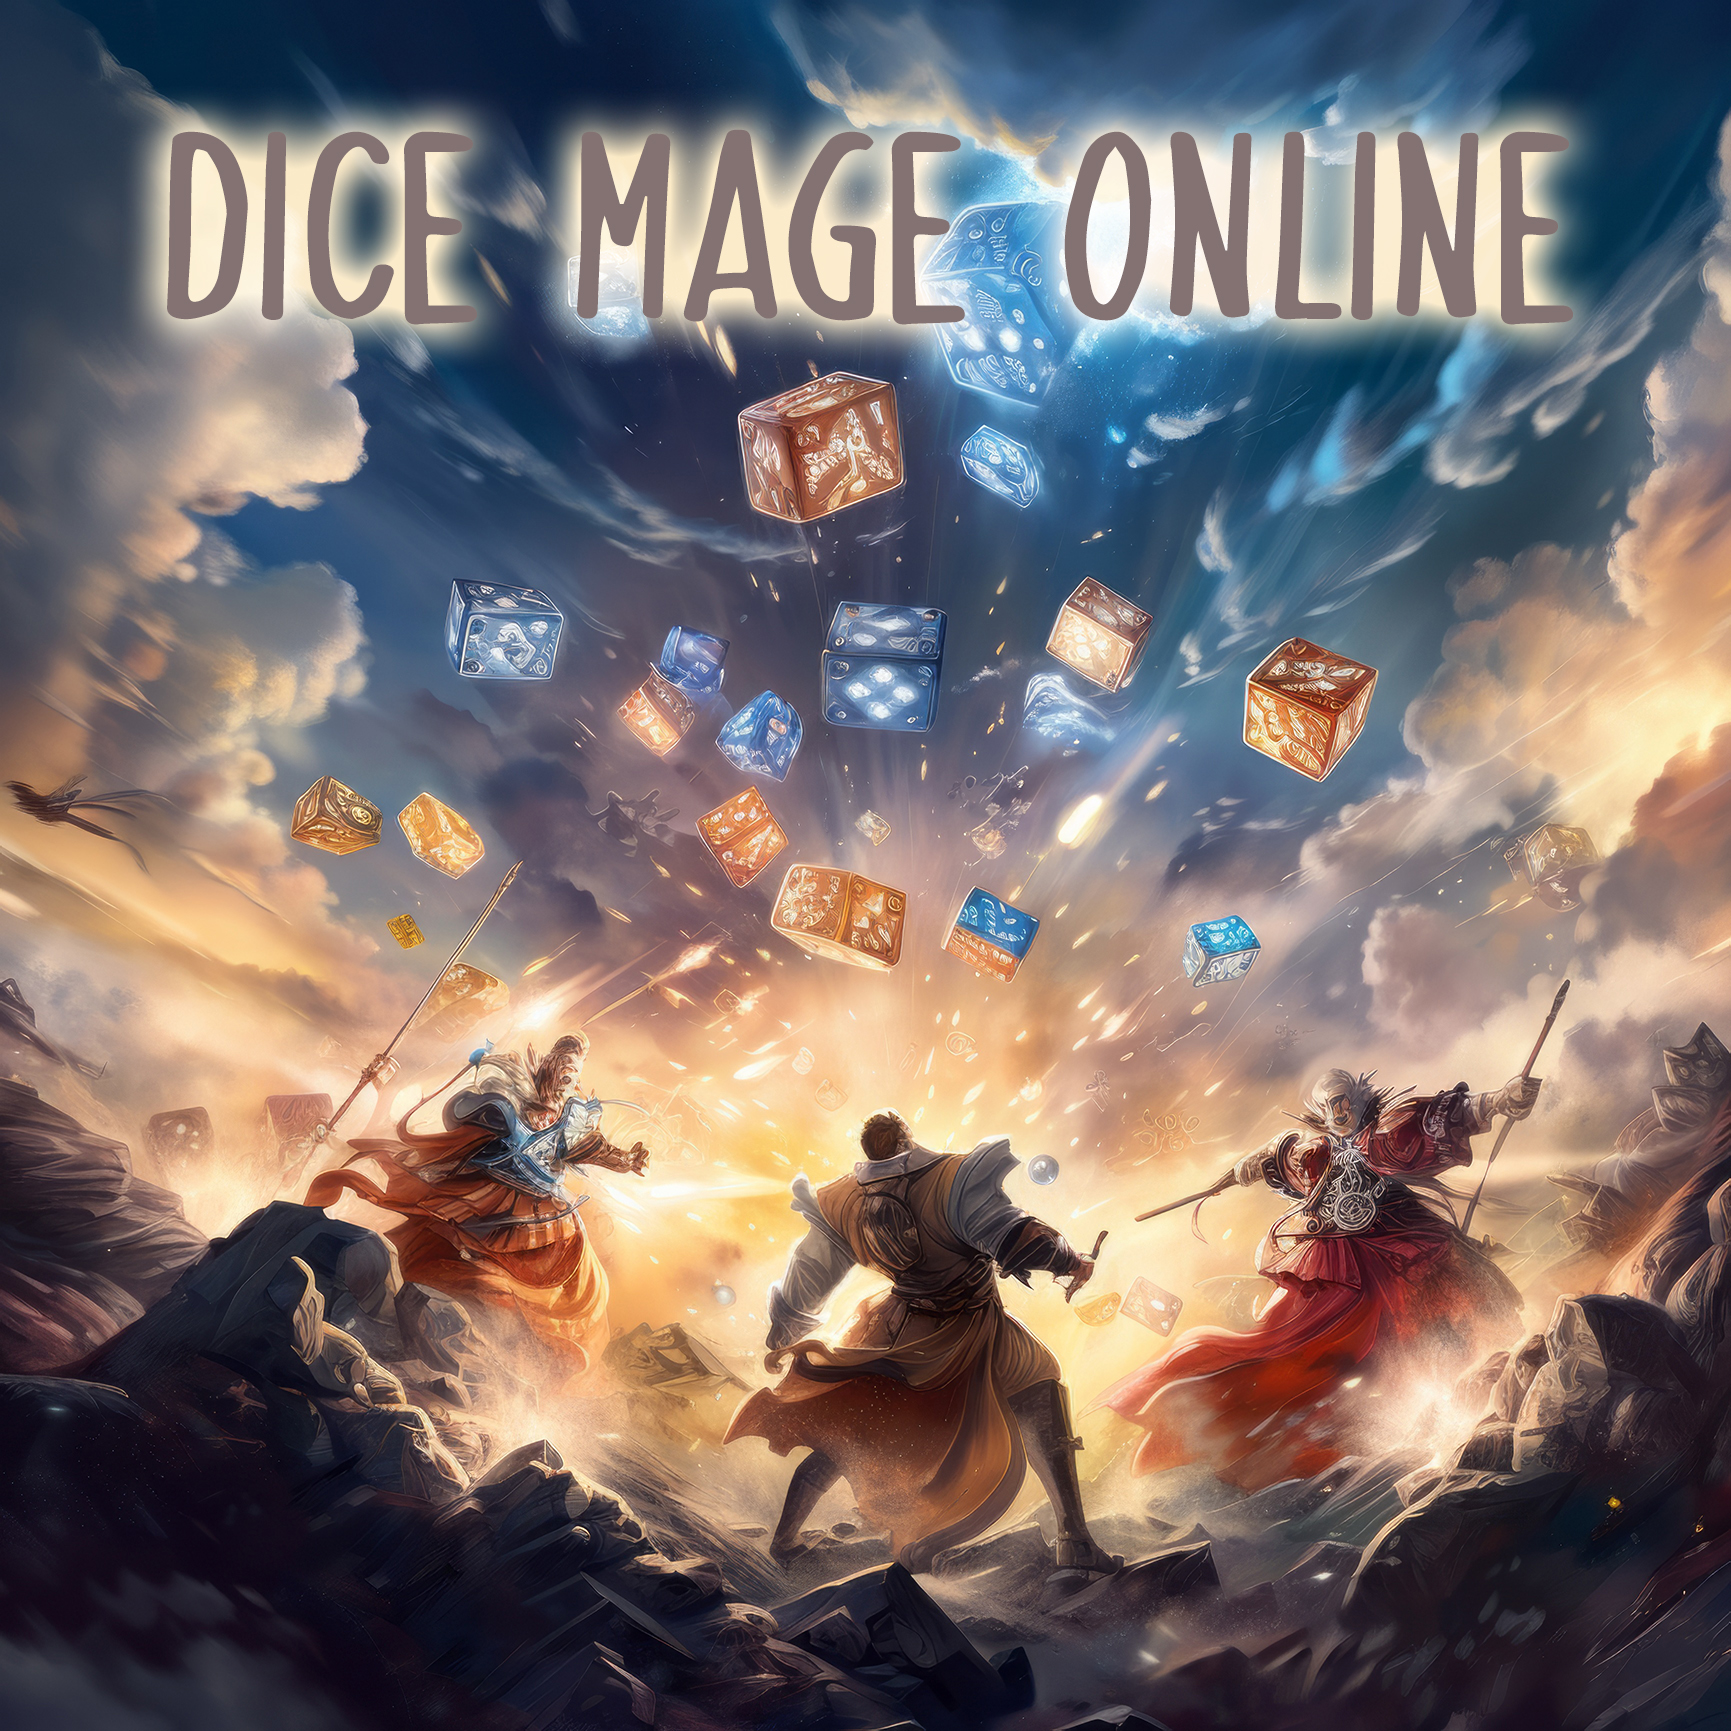 Dice Mage Online